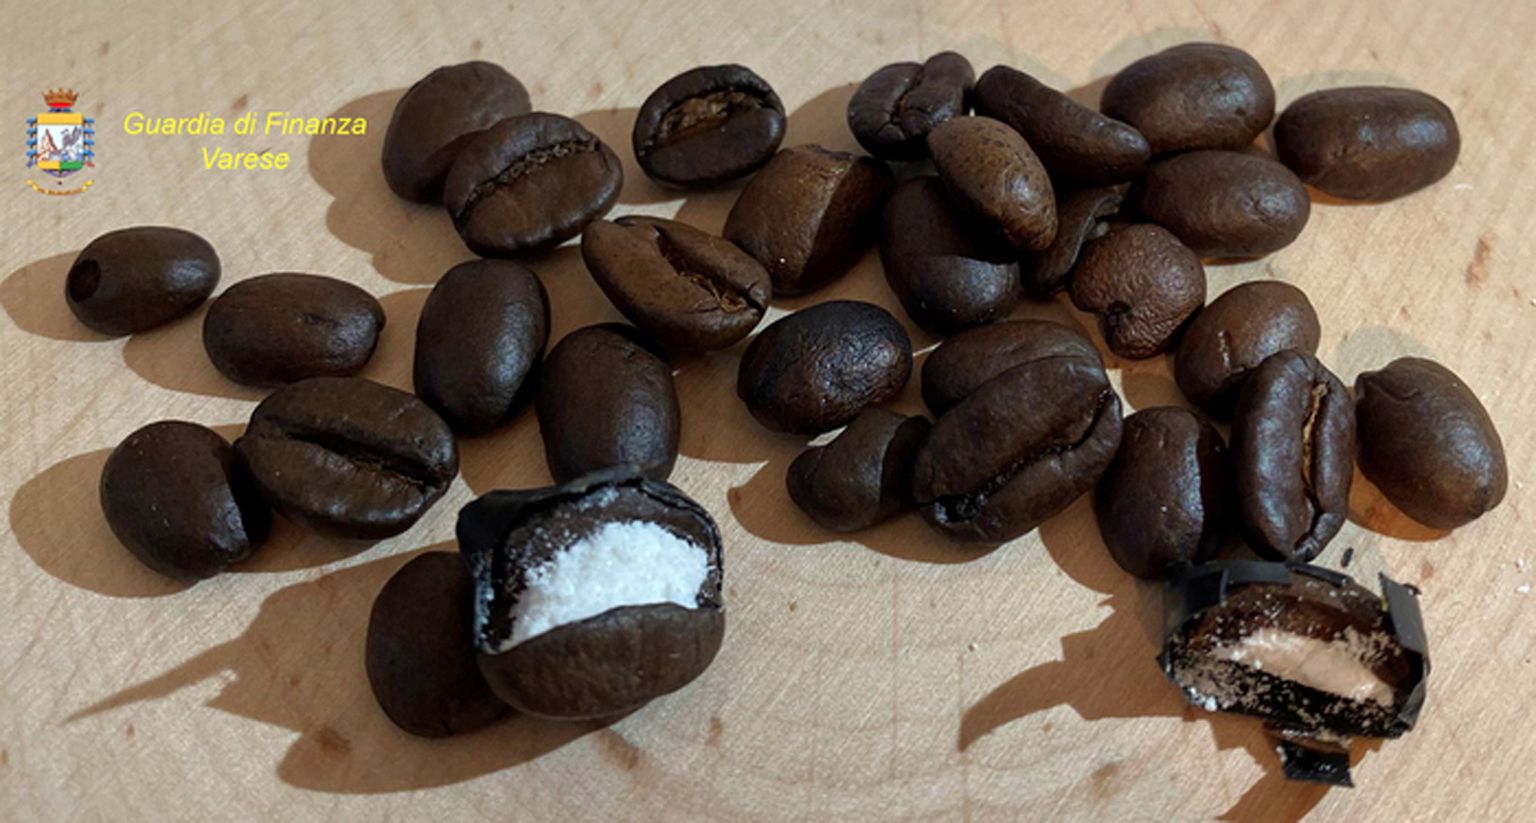 Itaalia politsei leidis kohviubadesse peidetud kokaiini, mille saajaks oli märgitud Hollywoodi filmist pärit väljamõeldud maffiaboss.